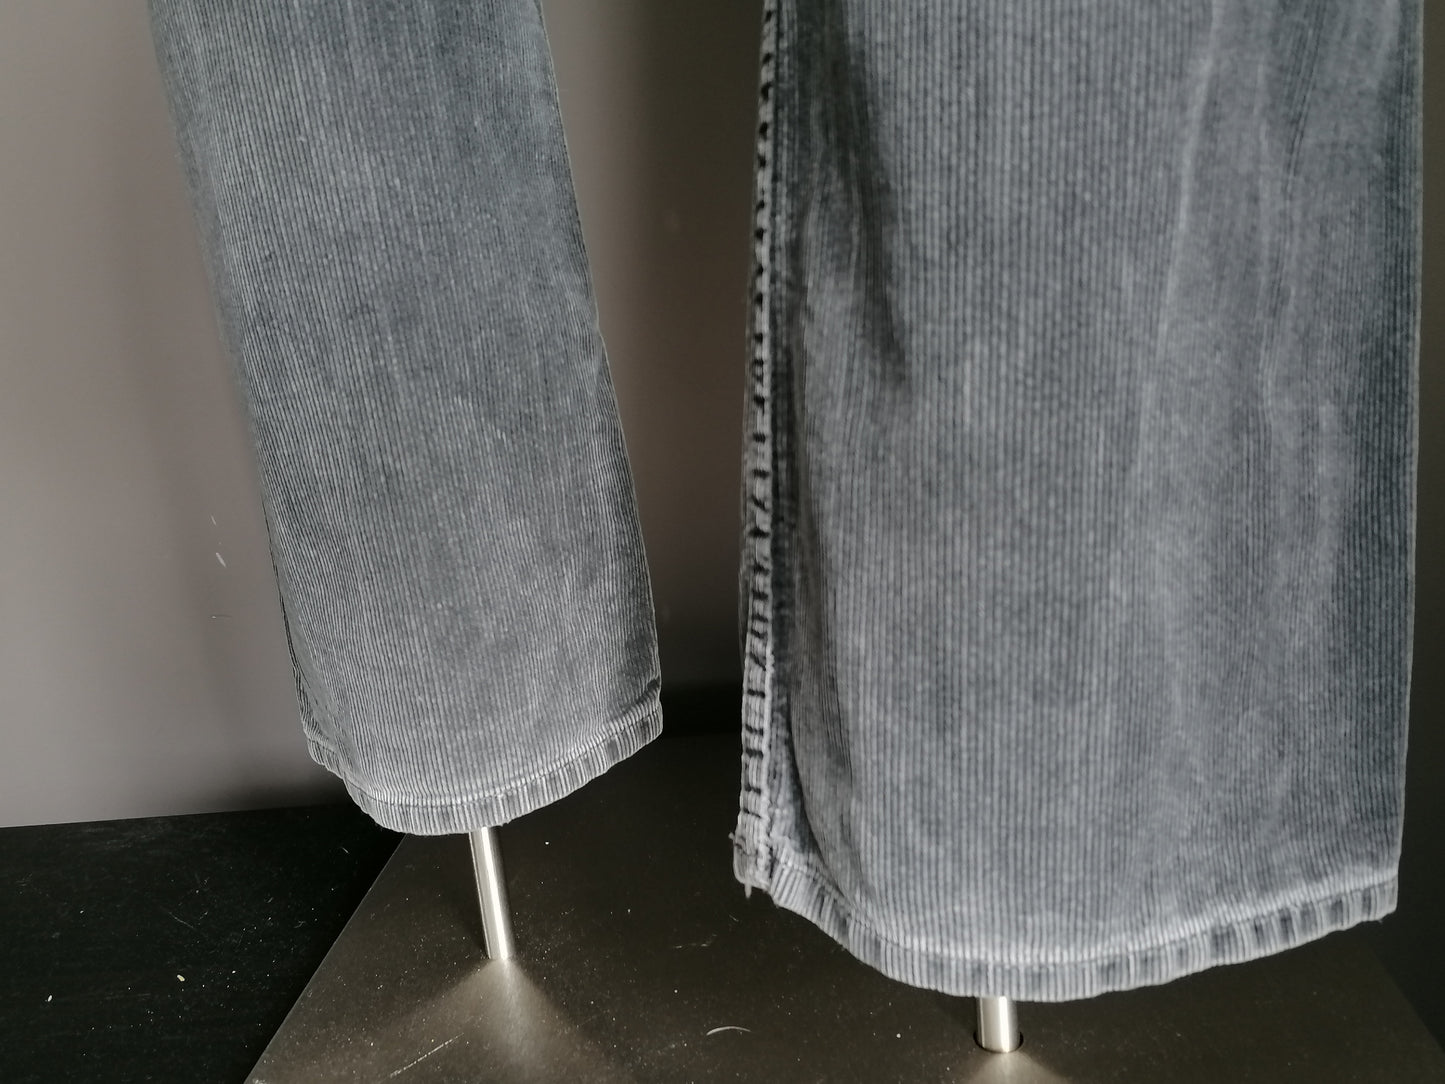 Pantalon de côtes de chavire. Coloré gris foncé. Taille W30 - L34. Tapez une poche basse.